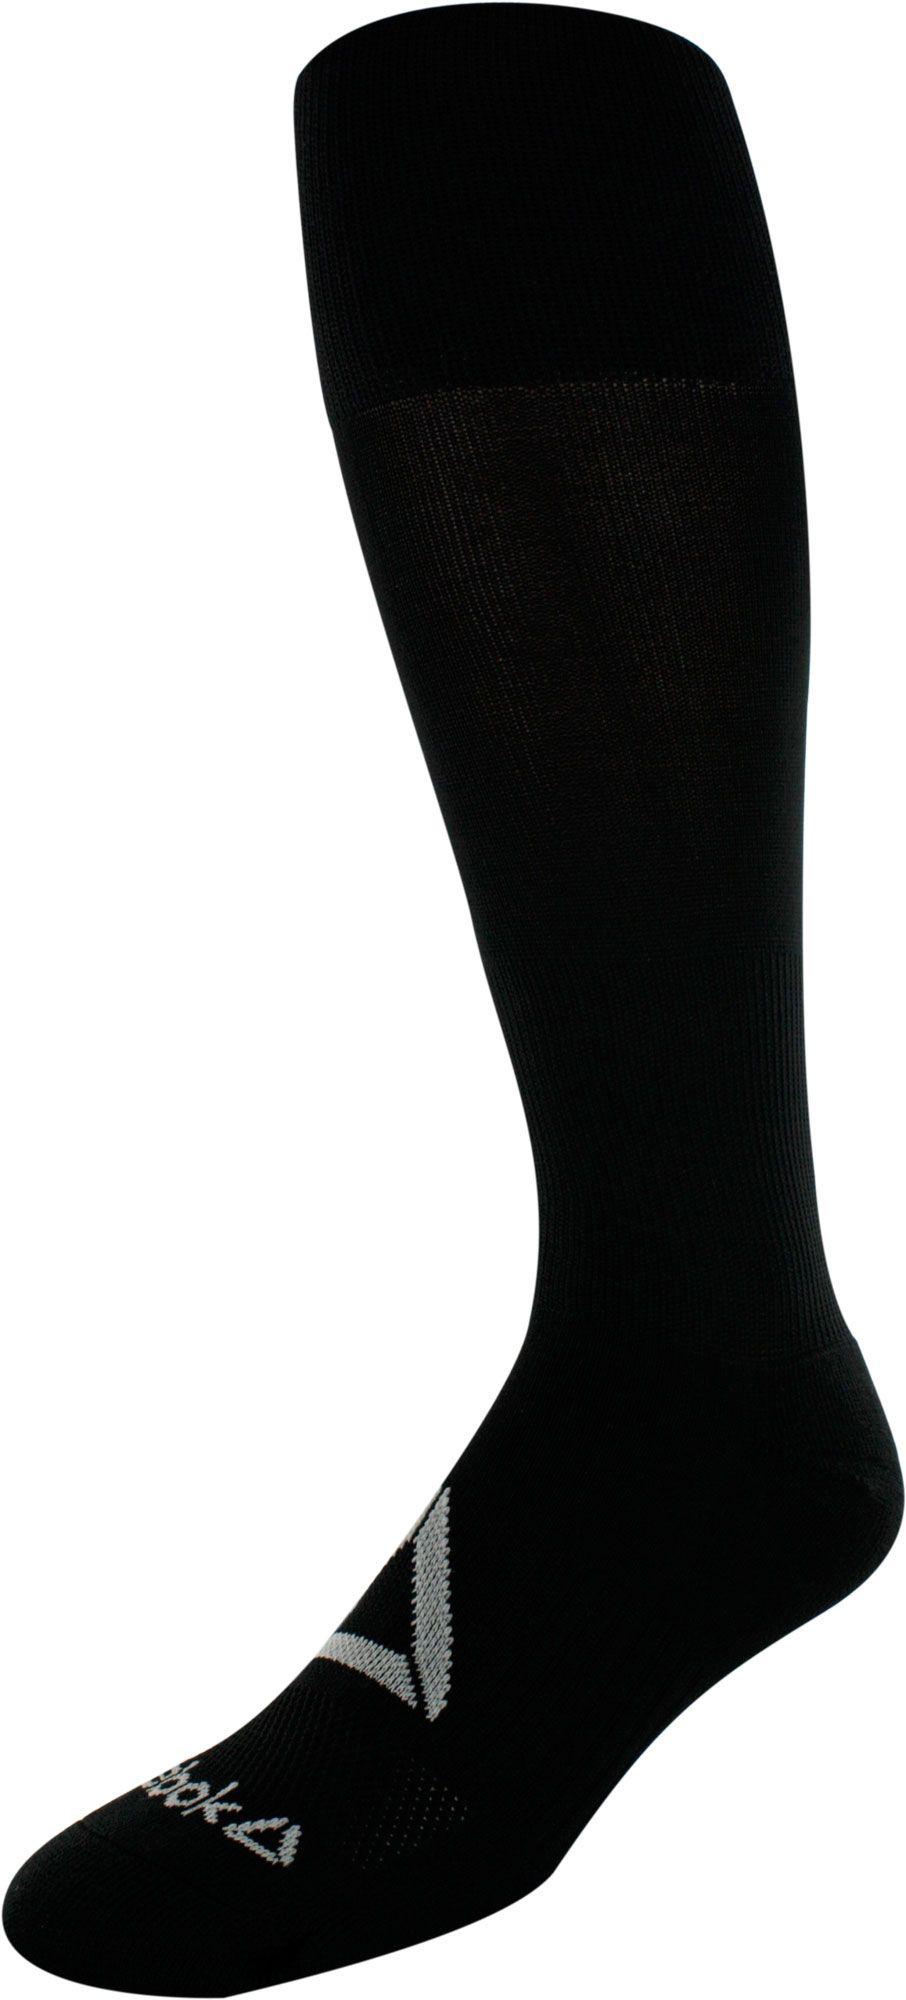 Reebok All Sport Athletic Knee High Socks in Black for Men - Lyst